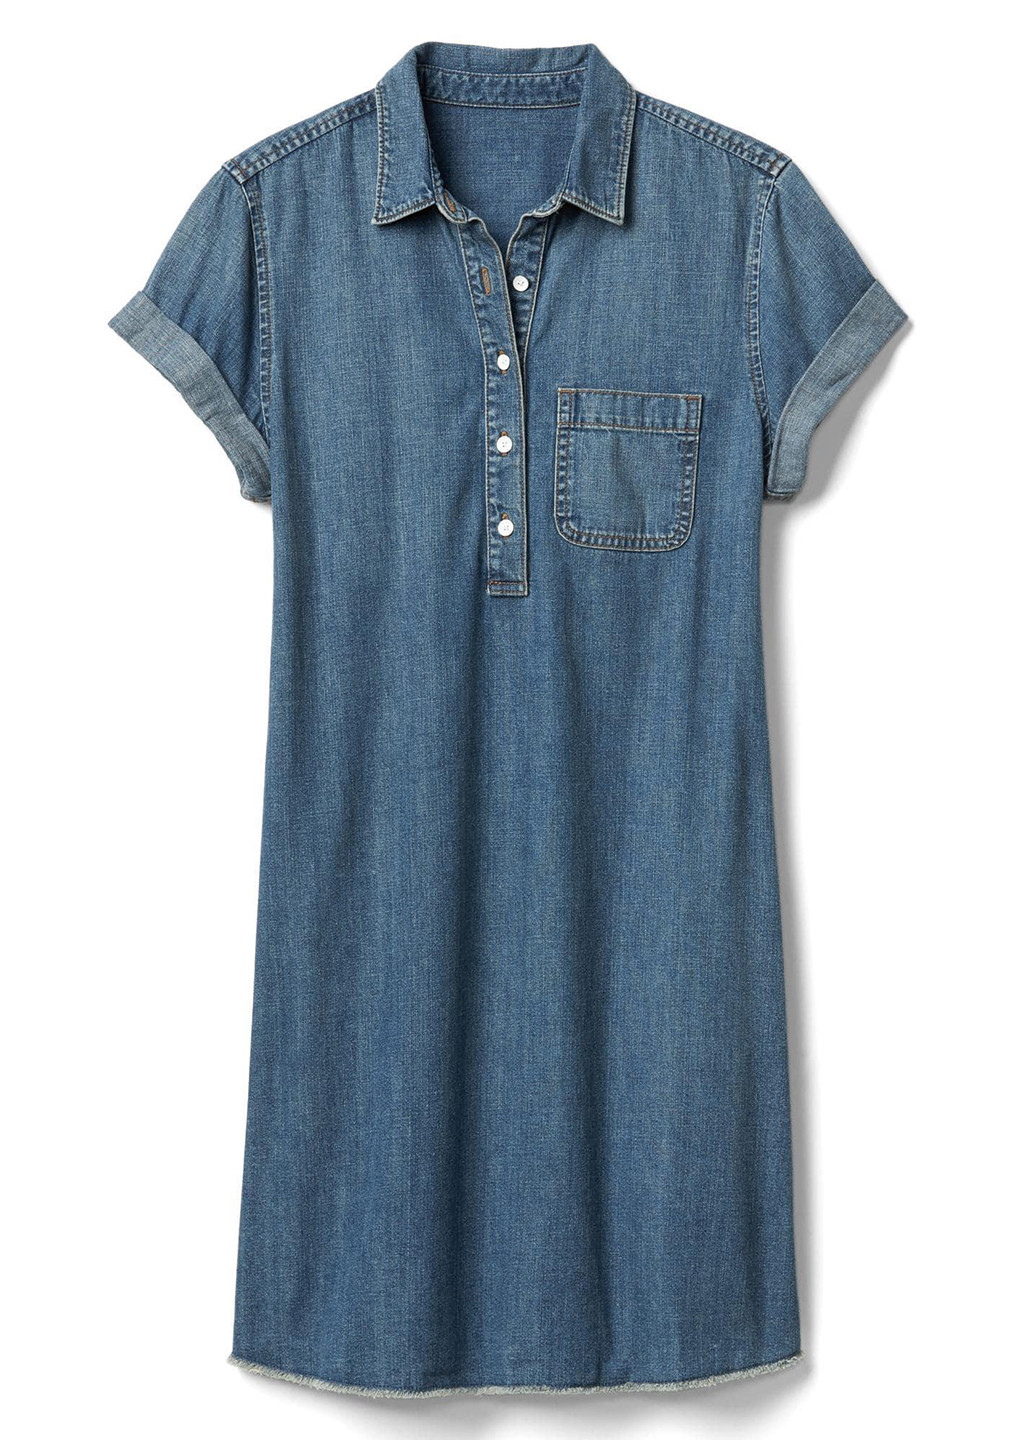 Синее джинсовое платье рубашка Gap однотонное